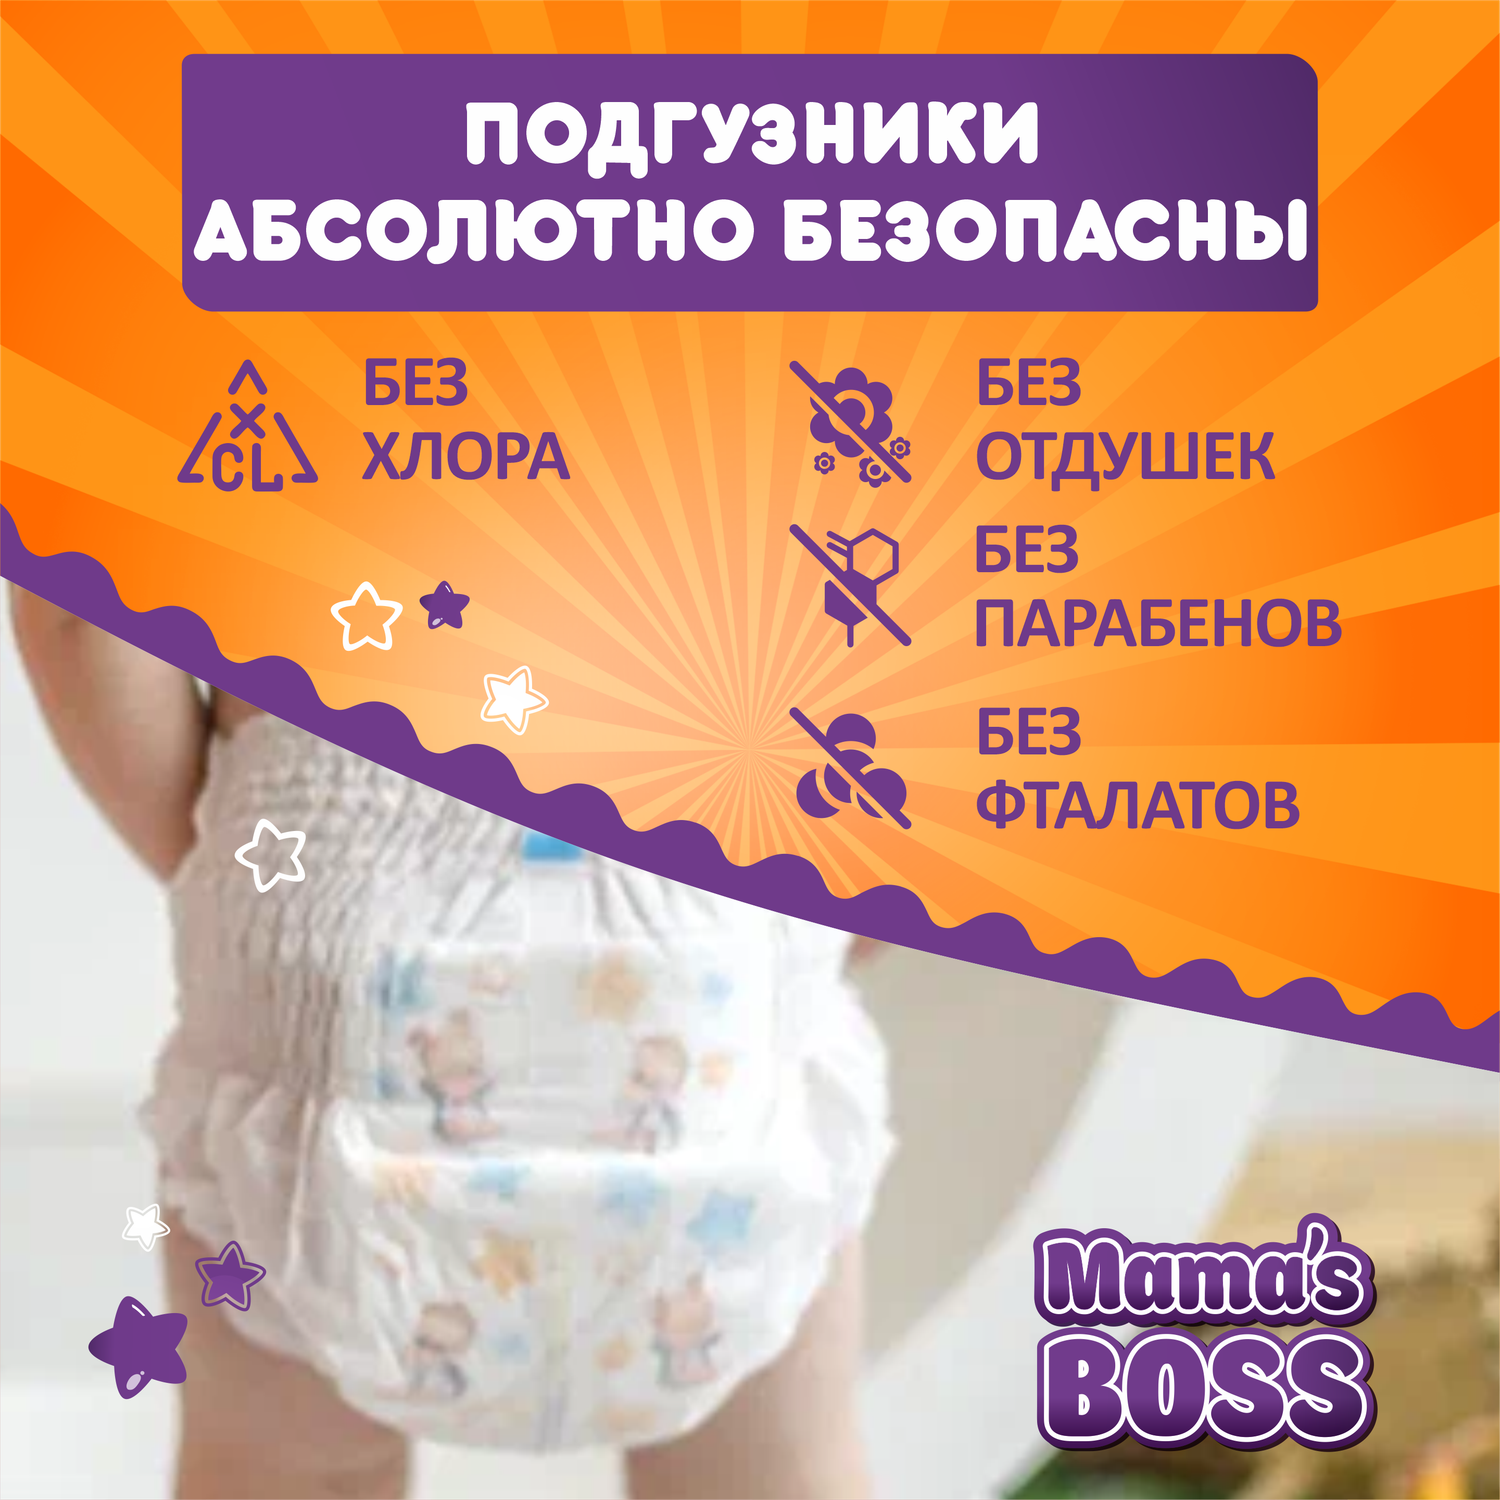 Подгузники трусики Mamas BOSS для детей размер M 54 шт - фото 7